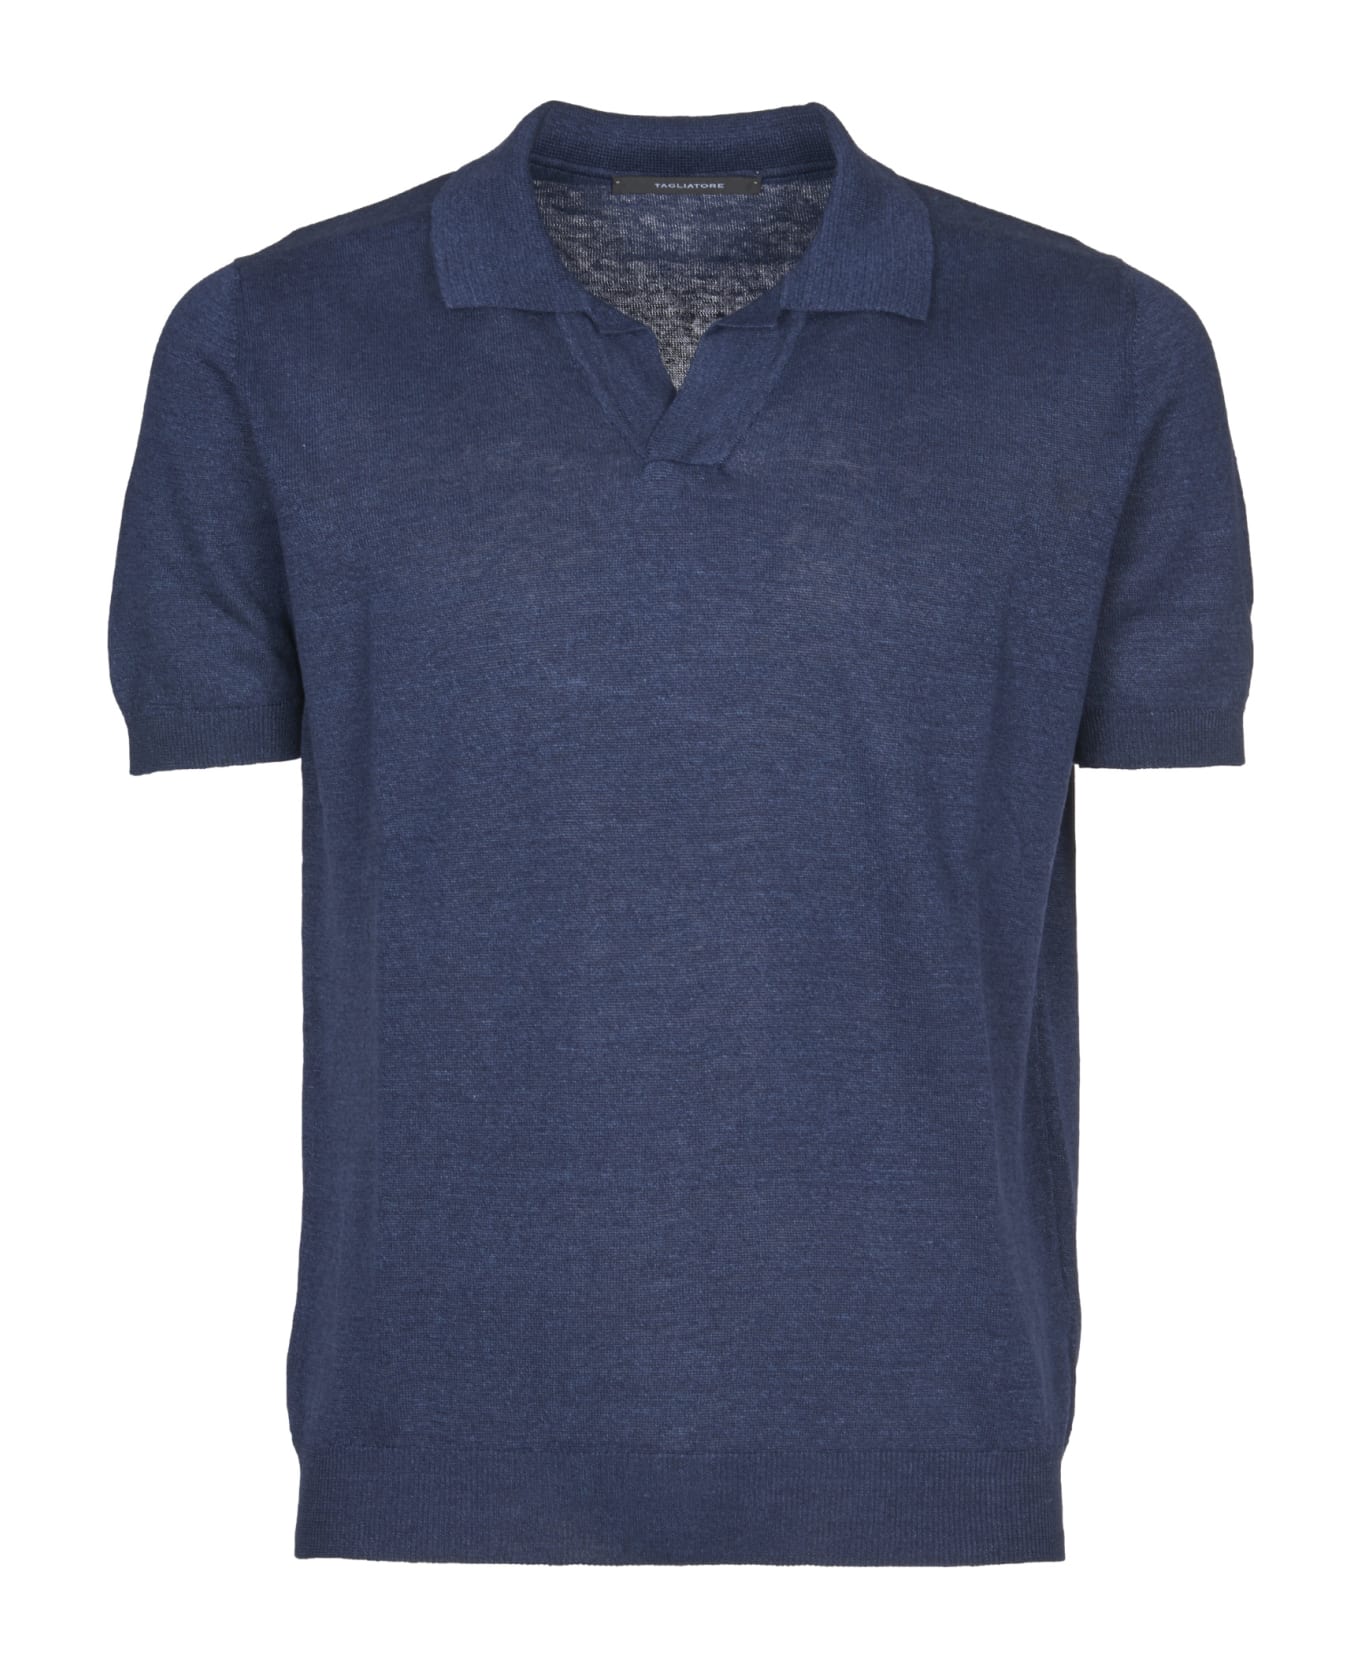 Tagliatore Polo Shirt - Blue ポロシャツ